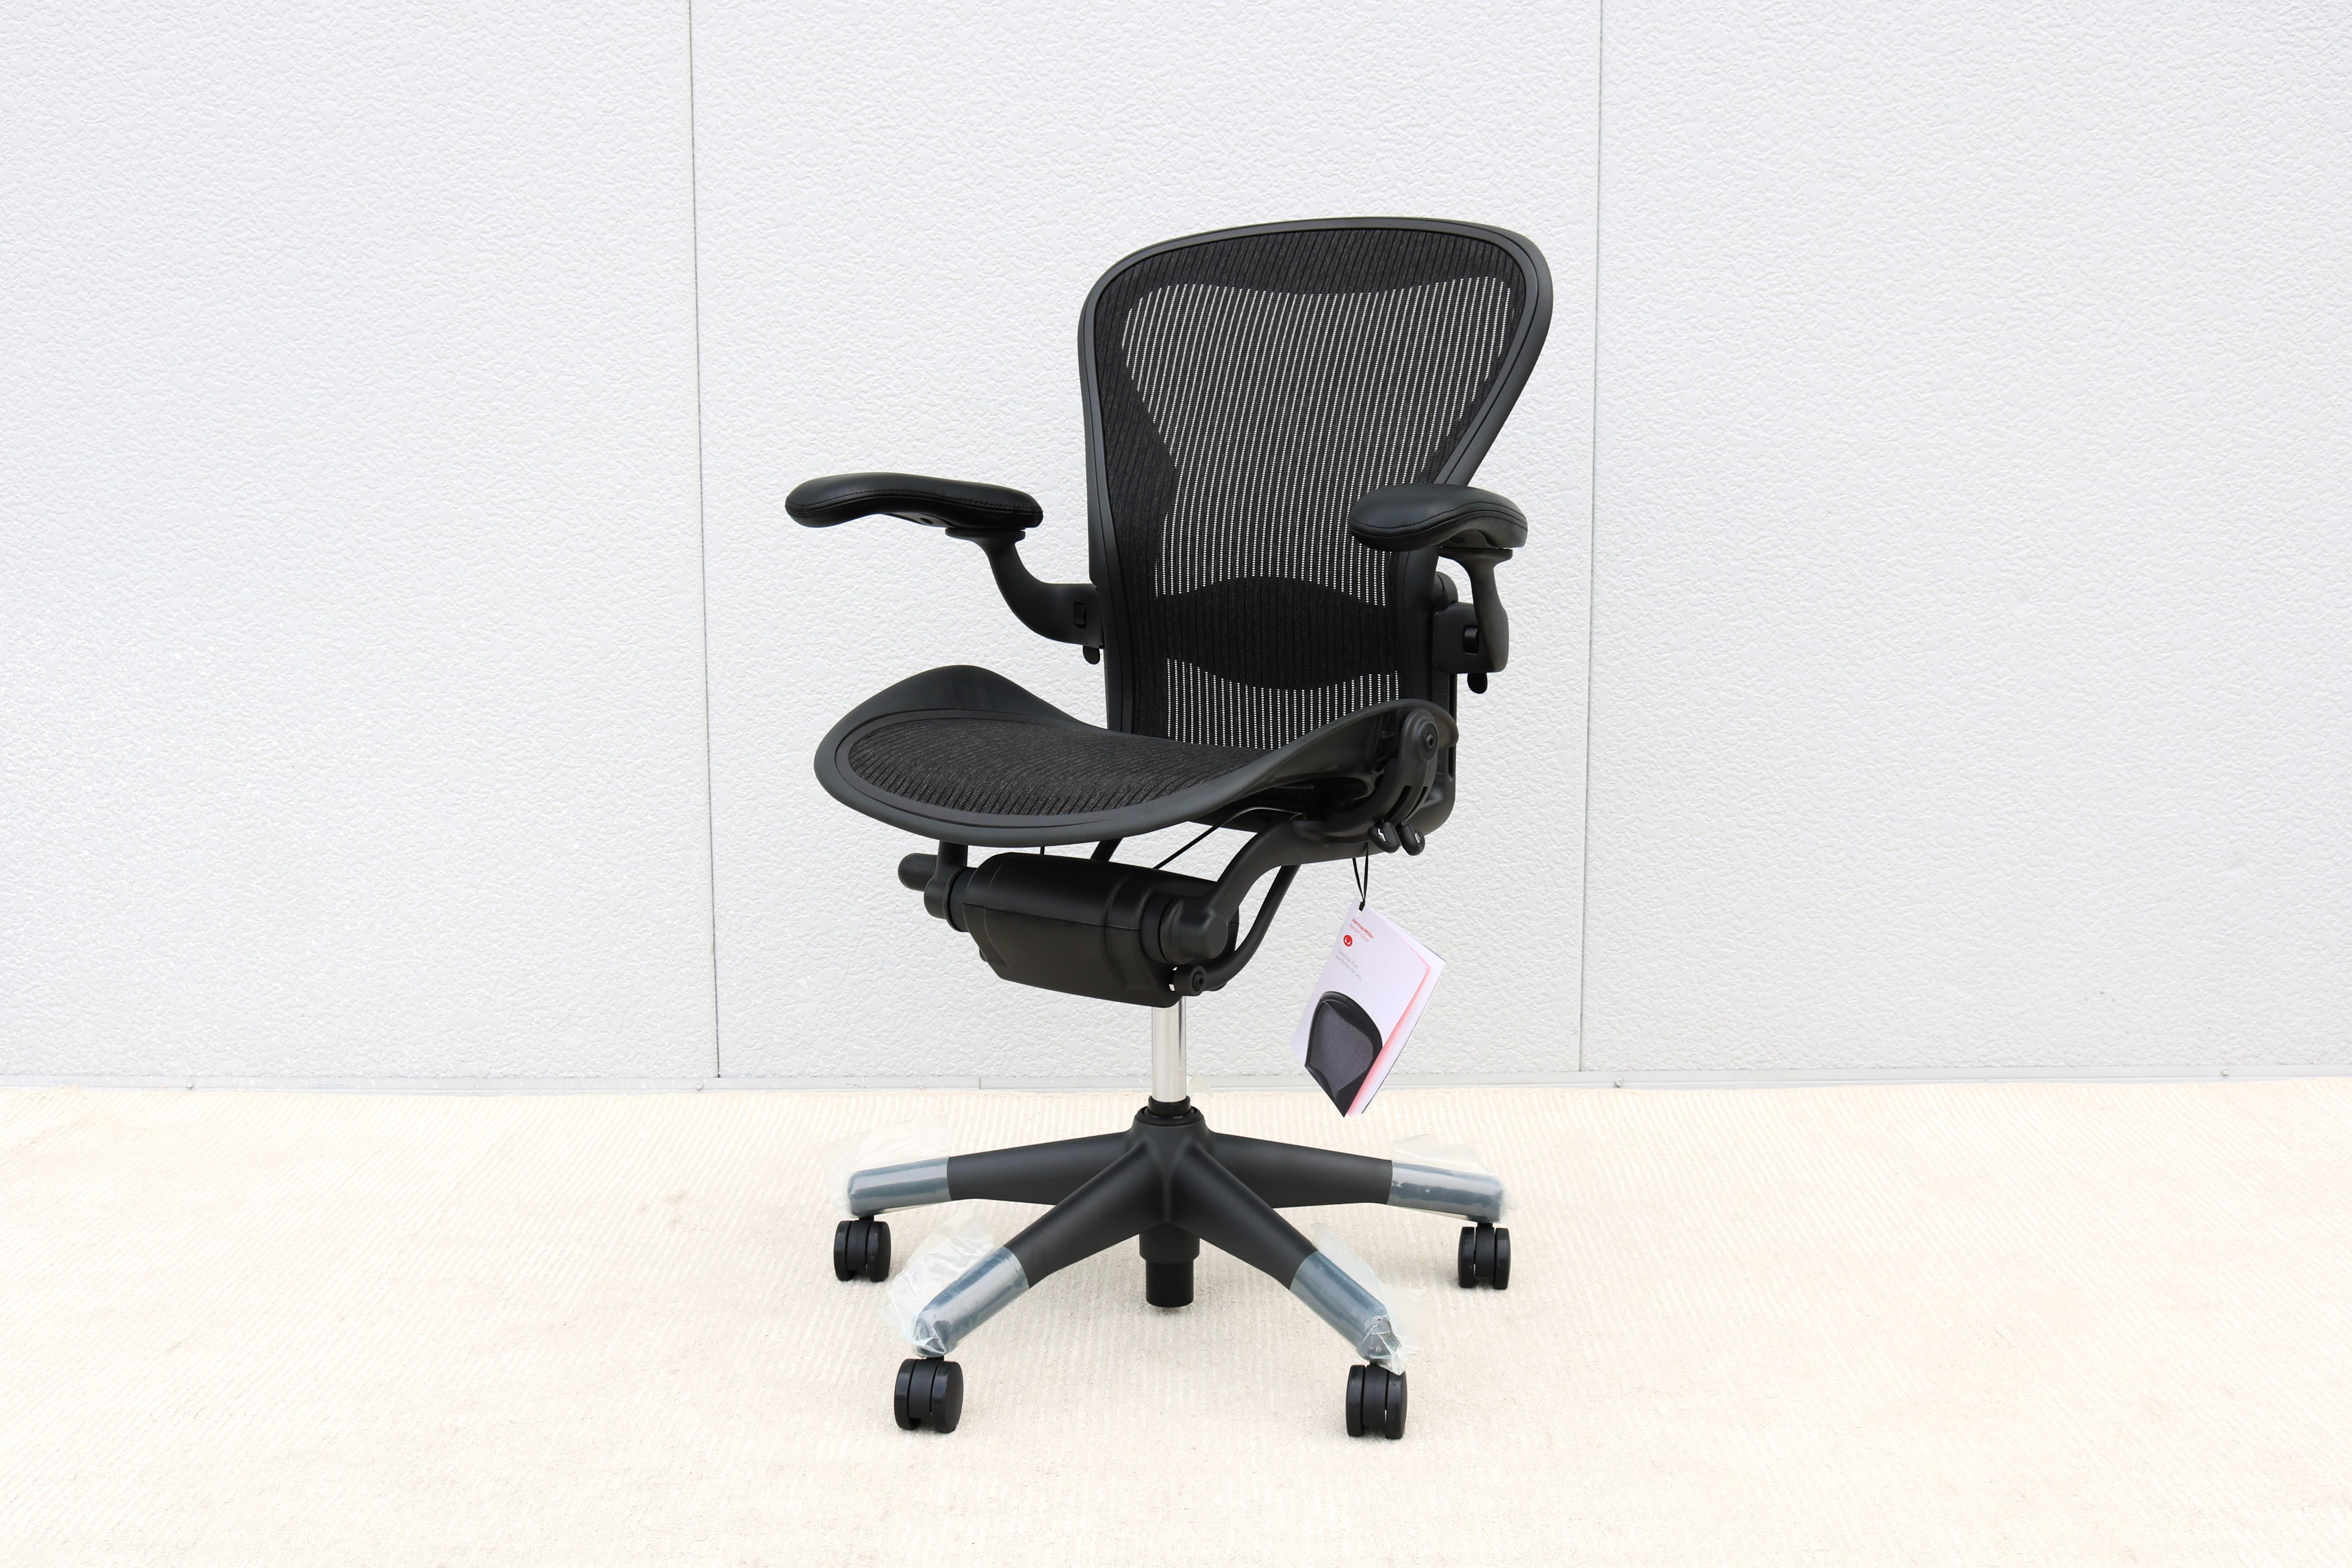 Aeron-Stuhl Größe (B) voll ausgestattet mit allen Einstellungen von Herman Miller.
Er ist der beste und am meisten bewunderte und anerkannte ergonomische Bürostuhl, der je hergestellt wurde.
Sein innovatives Design und die Unterstützung einer Reihe